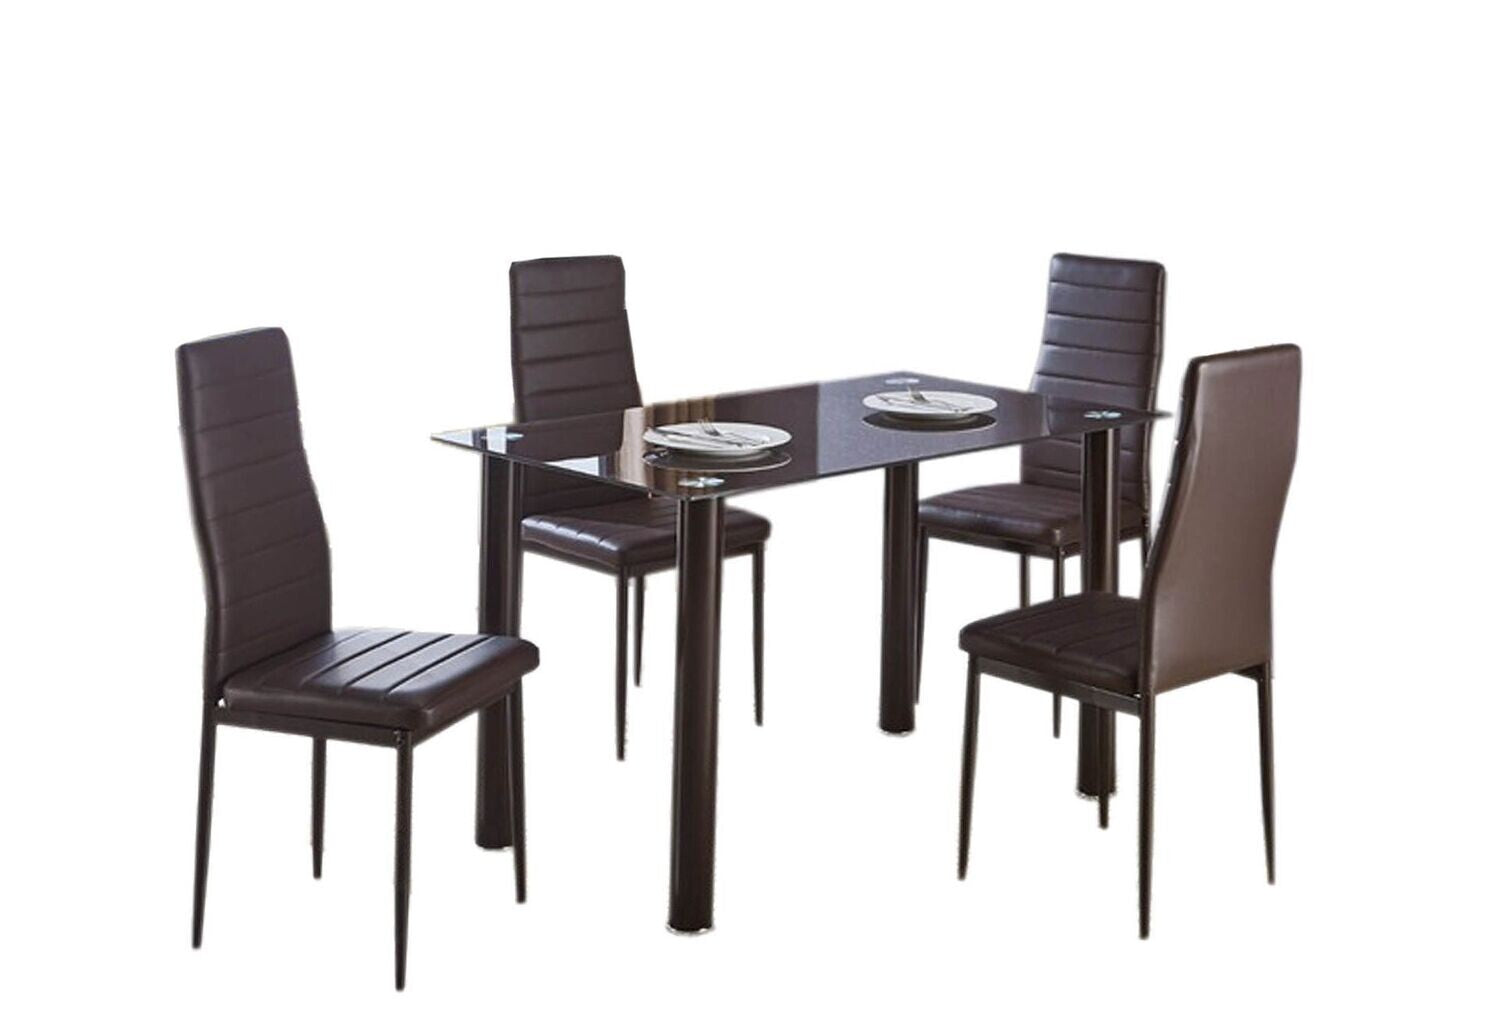 Table en verre trempé + 4 chaises en similicuir. Salle à manger ou cuisine